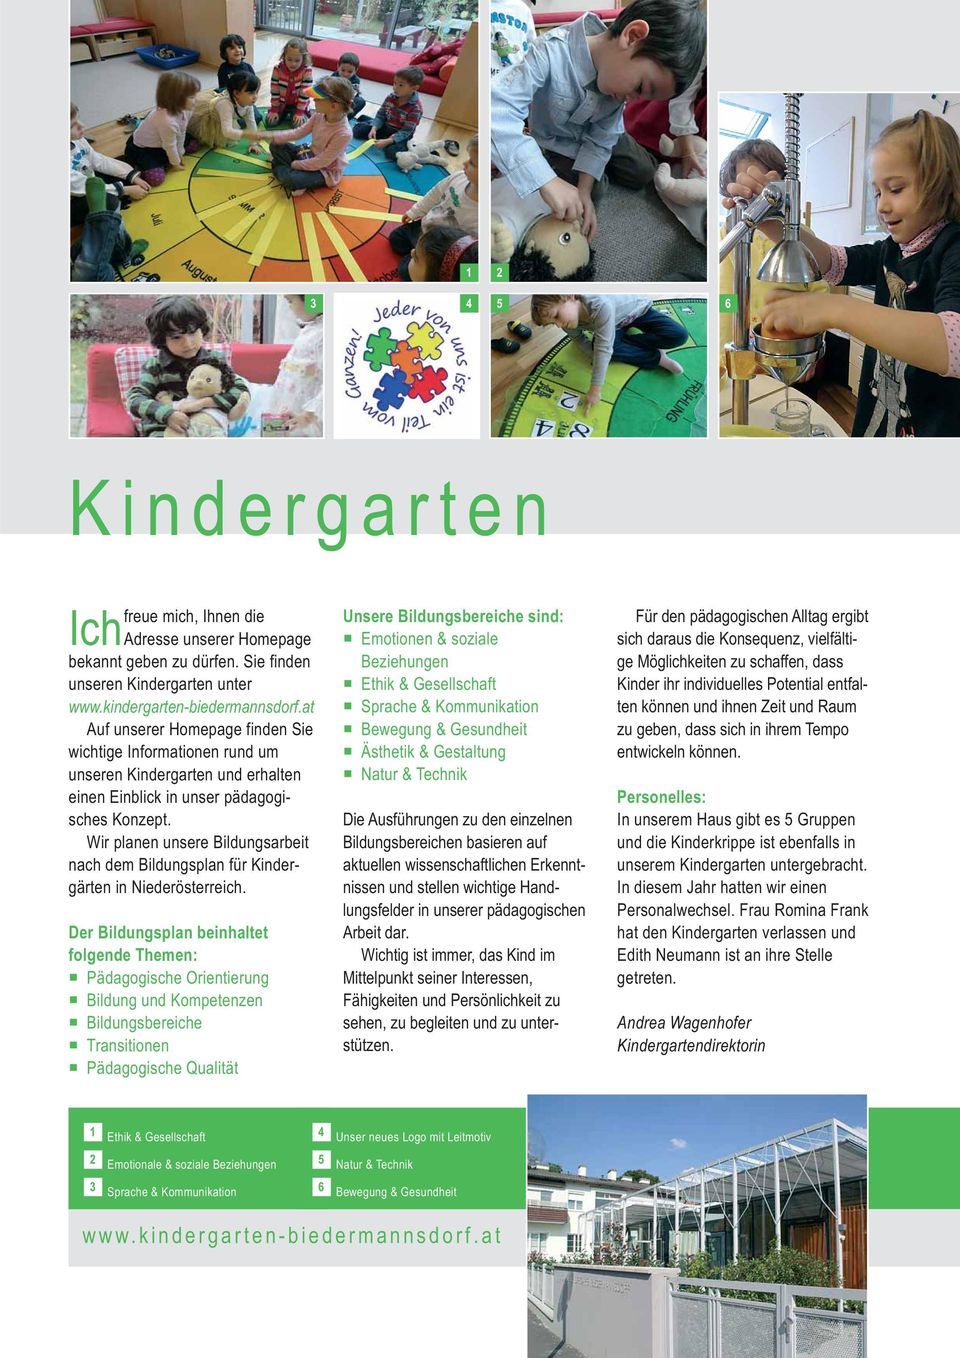 Wir planen unsere Bildungsarbeit nach dem Bildungsplan für Kinder - gärten in Niederösterreich.